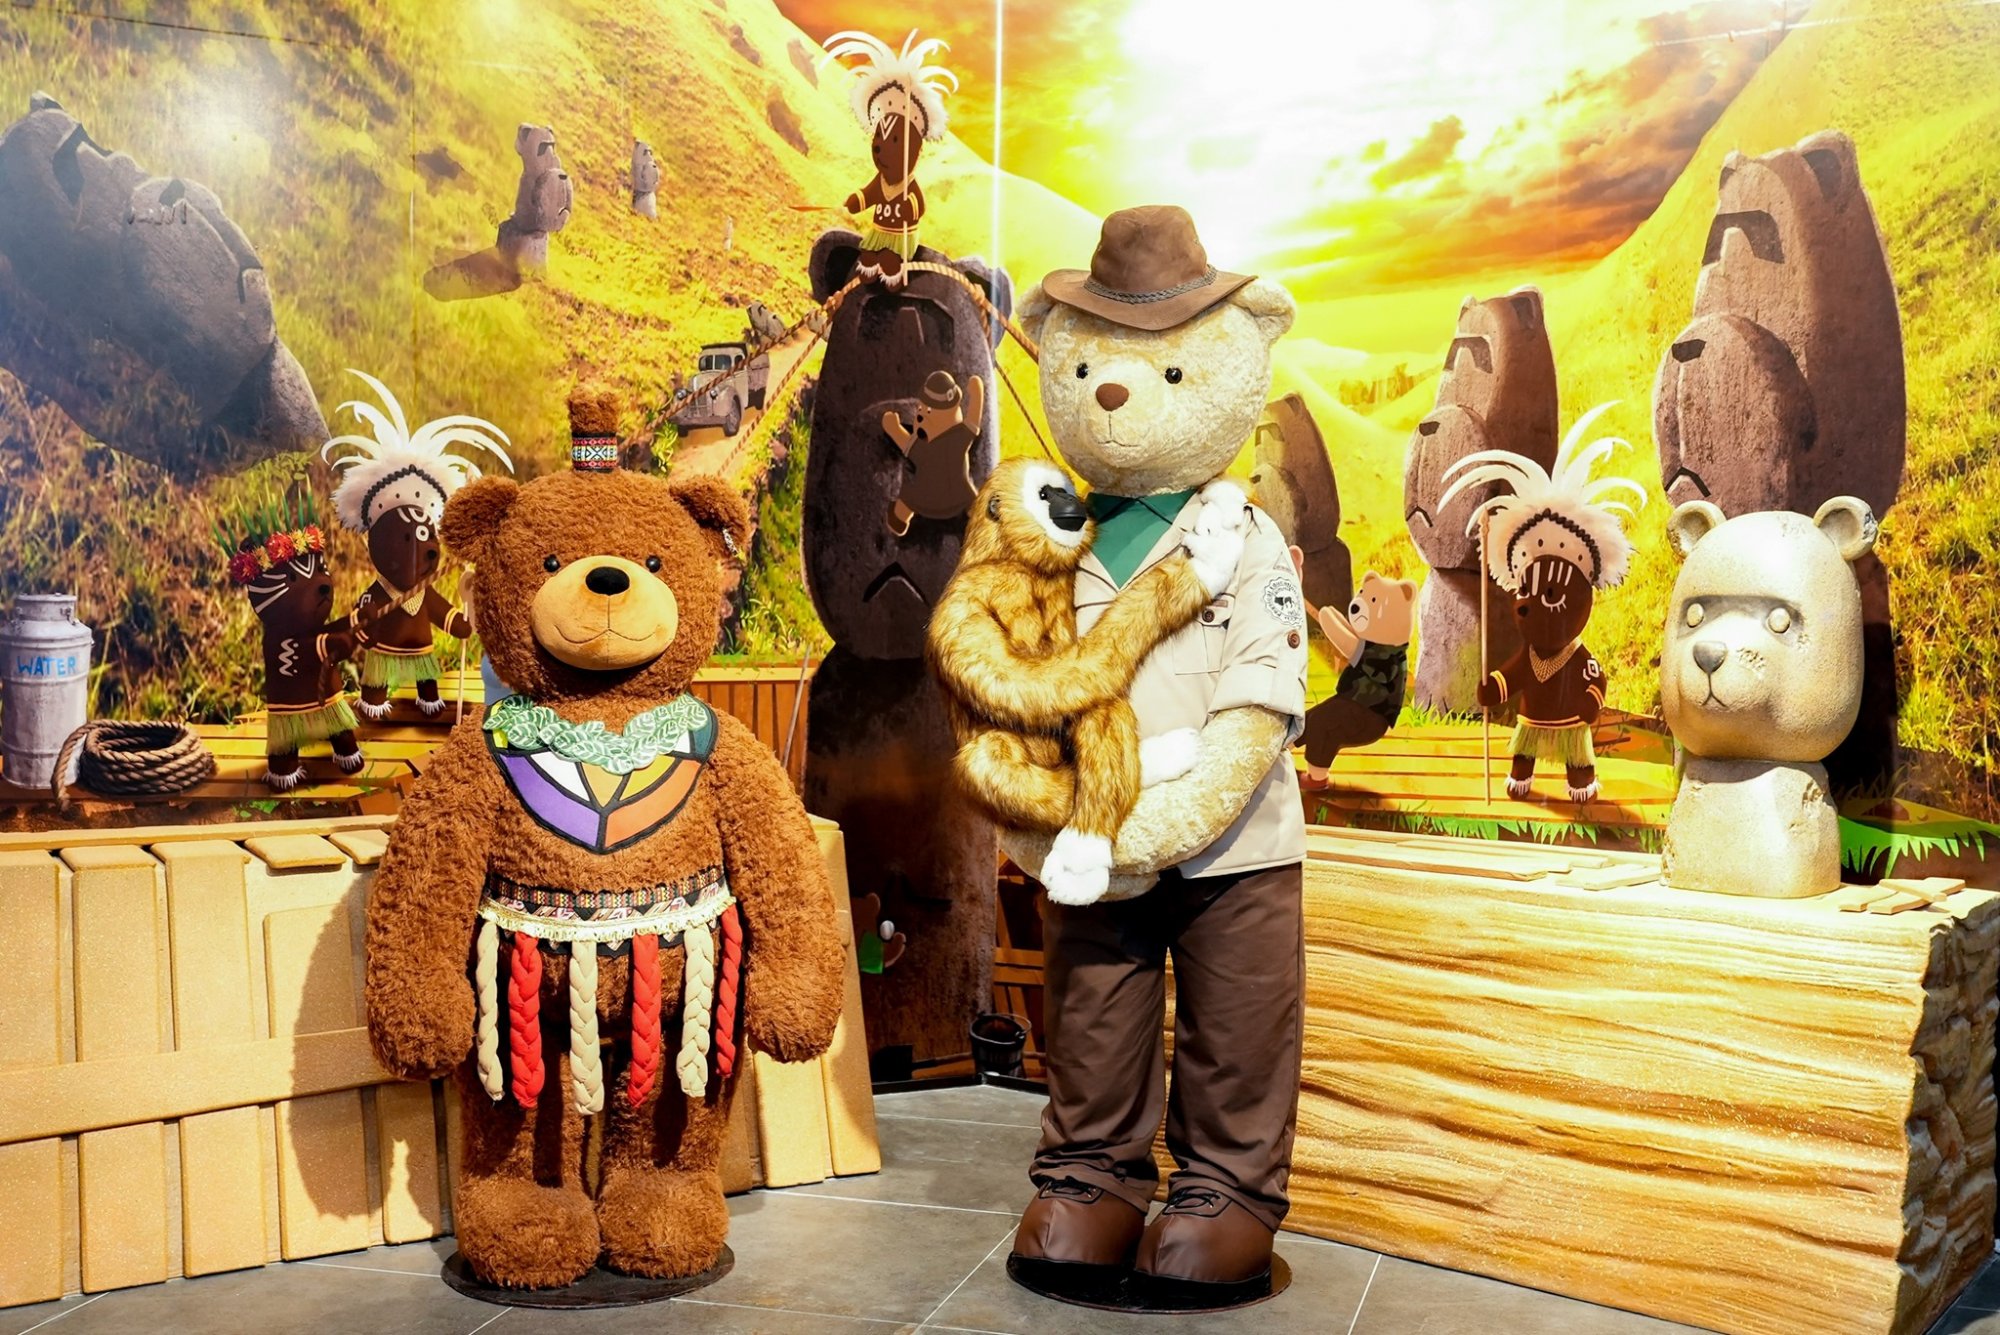 Khám phá bảo tàng gấu Teddy Phú Quốc  